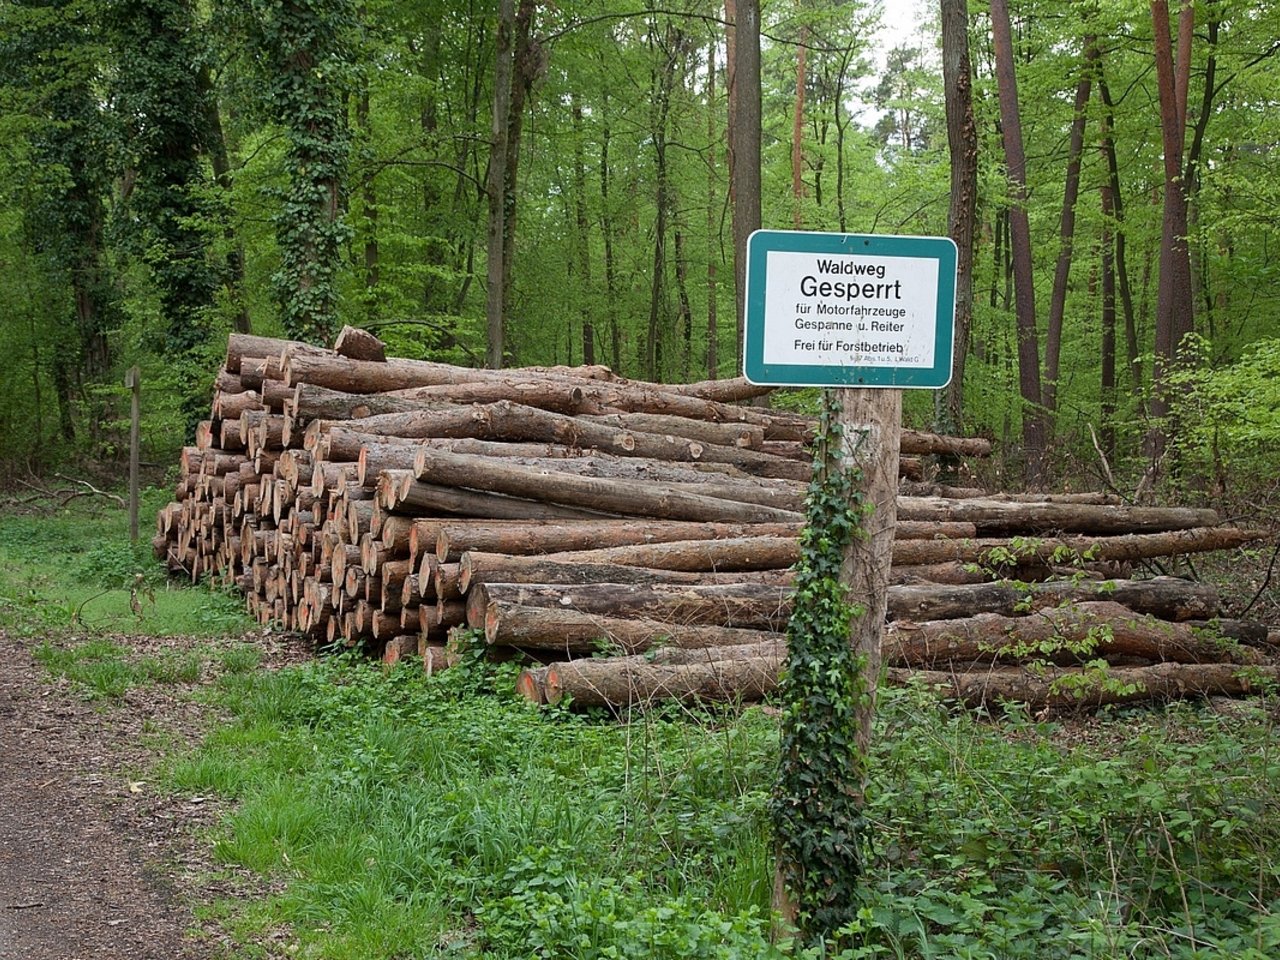 Holzpolter am Rand eines Waldweges, davor ein Schild, das auf das Verbot der Einfahrt in den Wald hinweist.